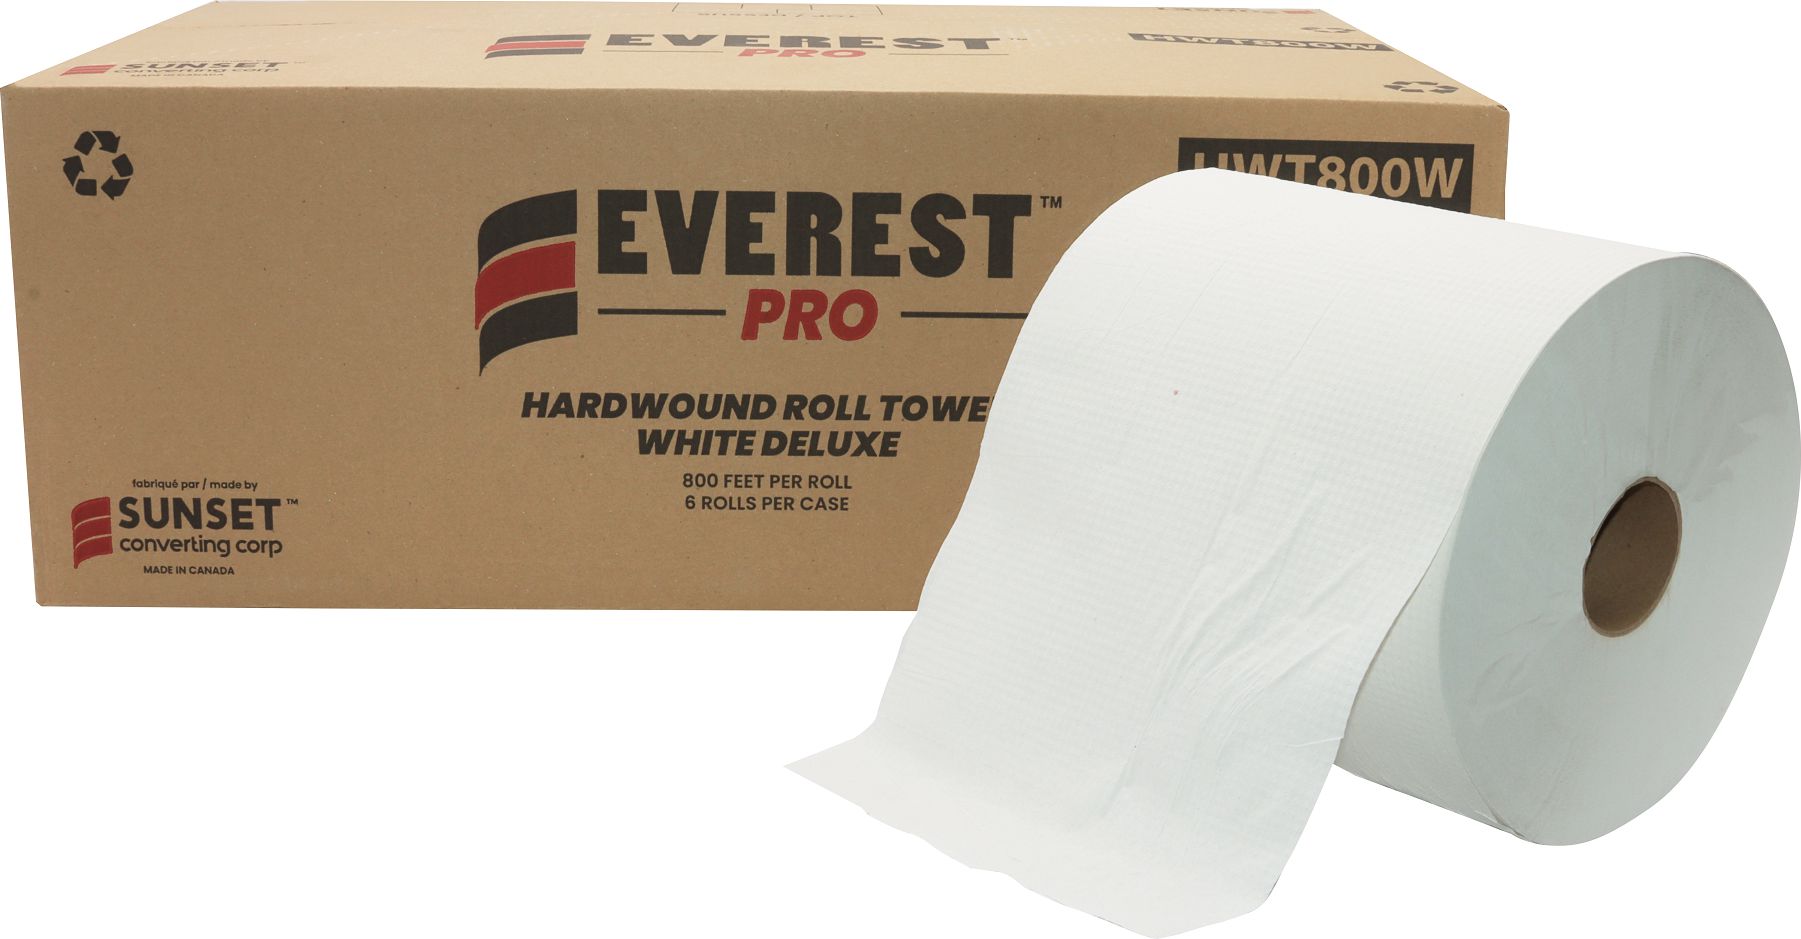 Everest Pro - 800 Feet, White Roll Towel, 6 Rl/Cs - HWT800W